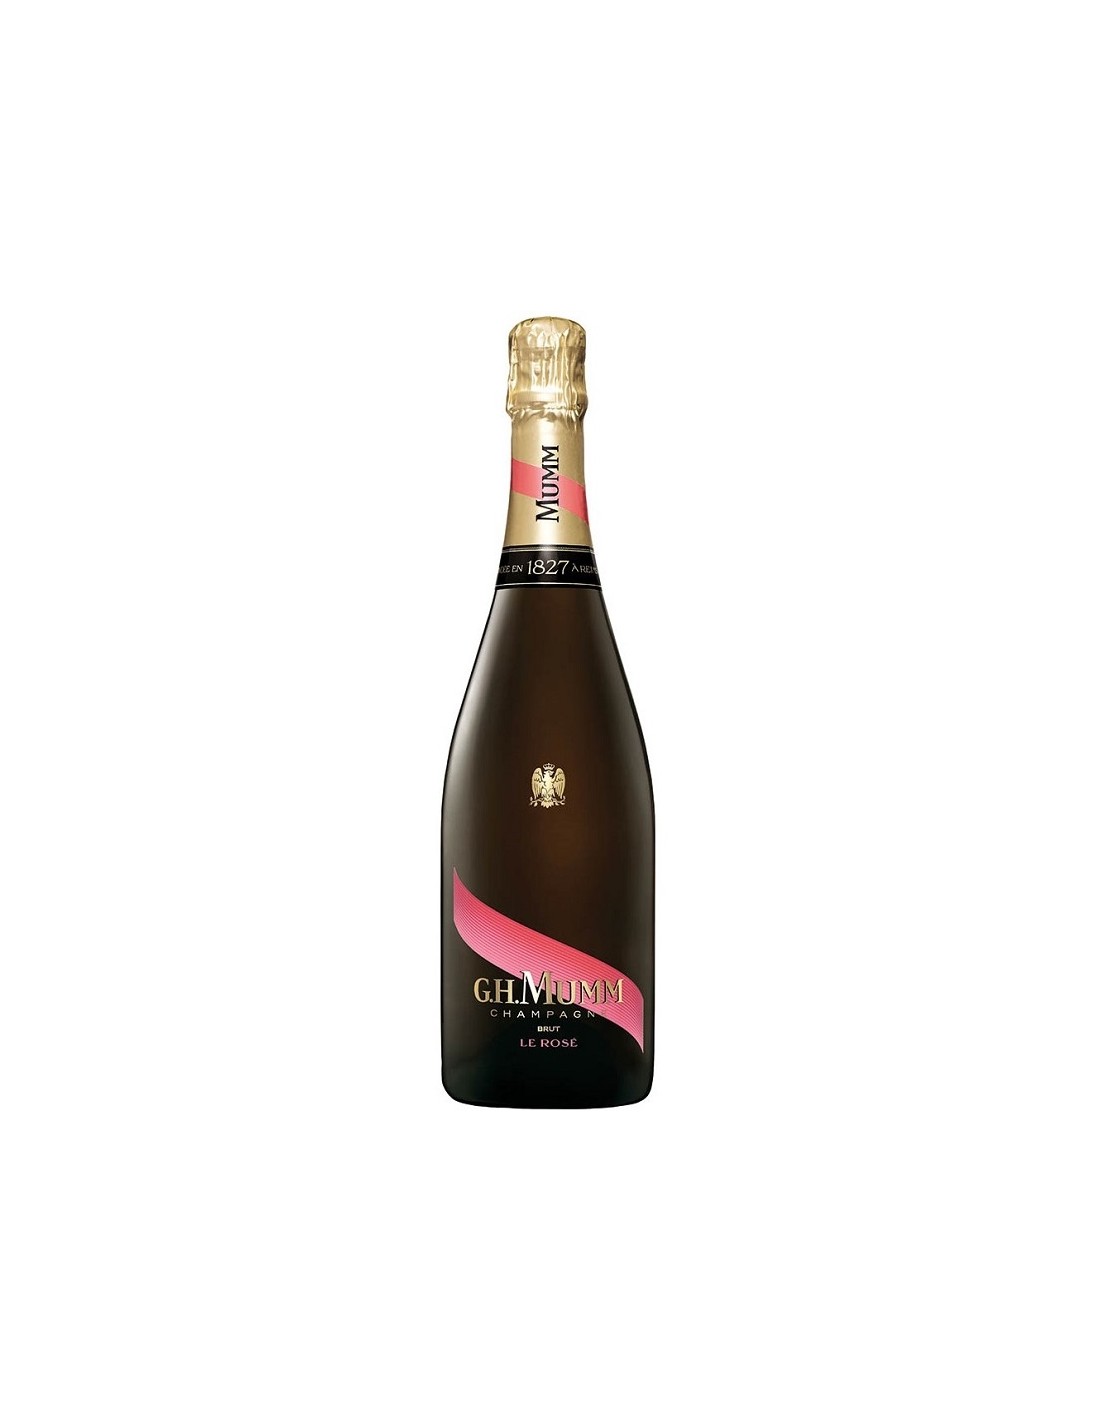 Sampanie G.H Mumm Brut Rose Champagne, 0.75L, 12% alc., Franta alcooldiscount.ro